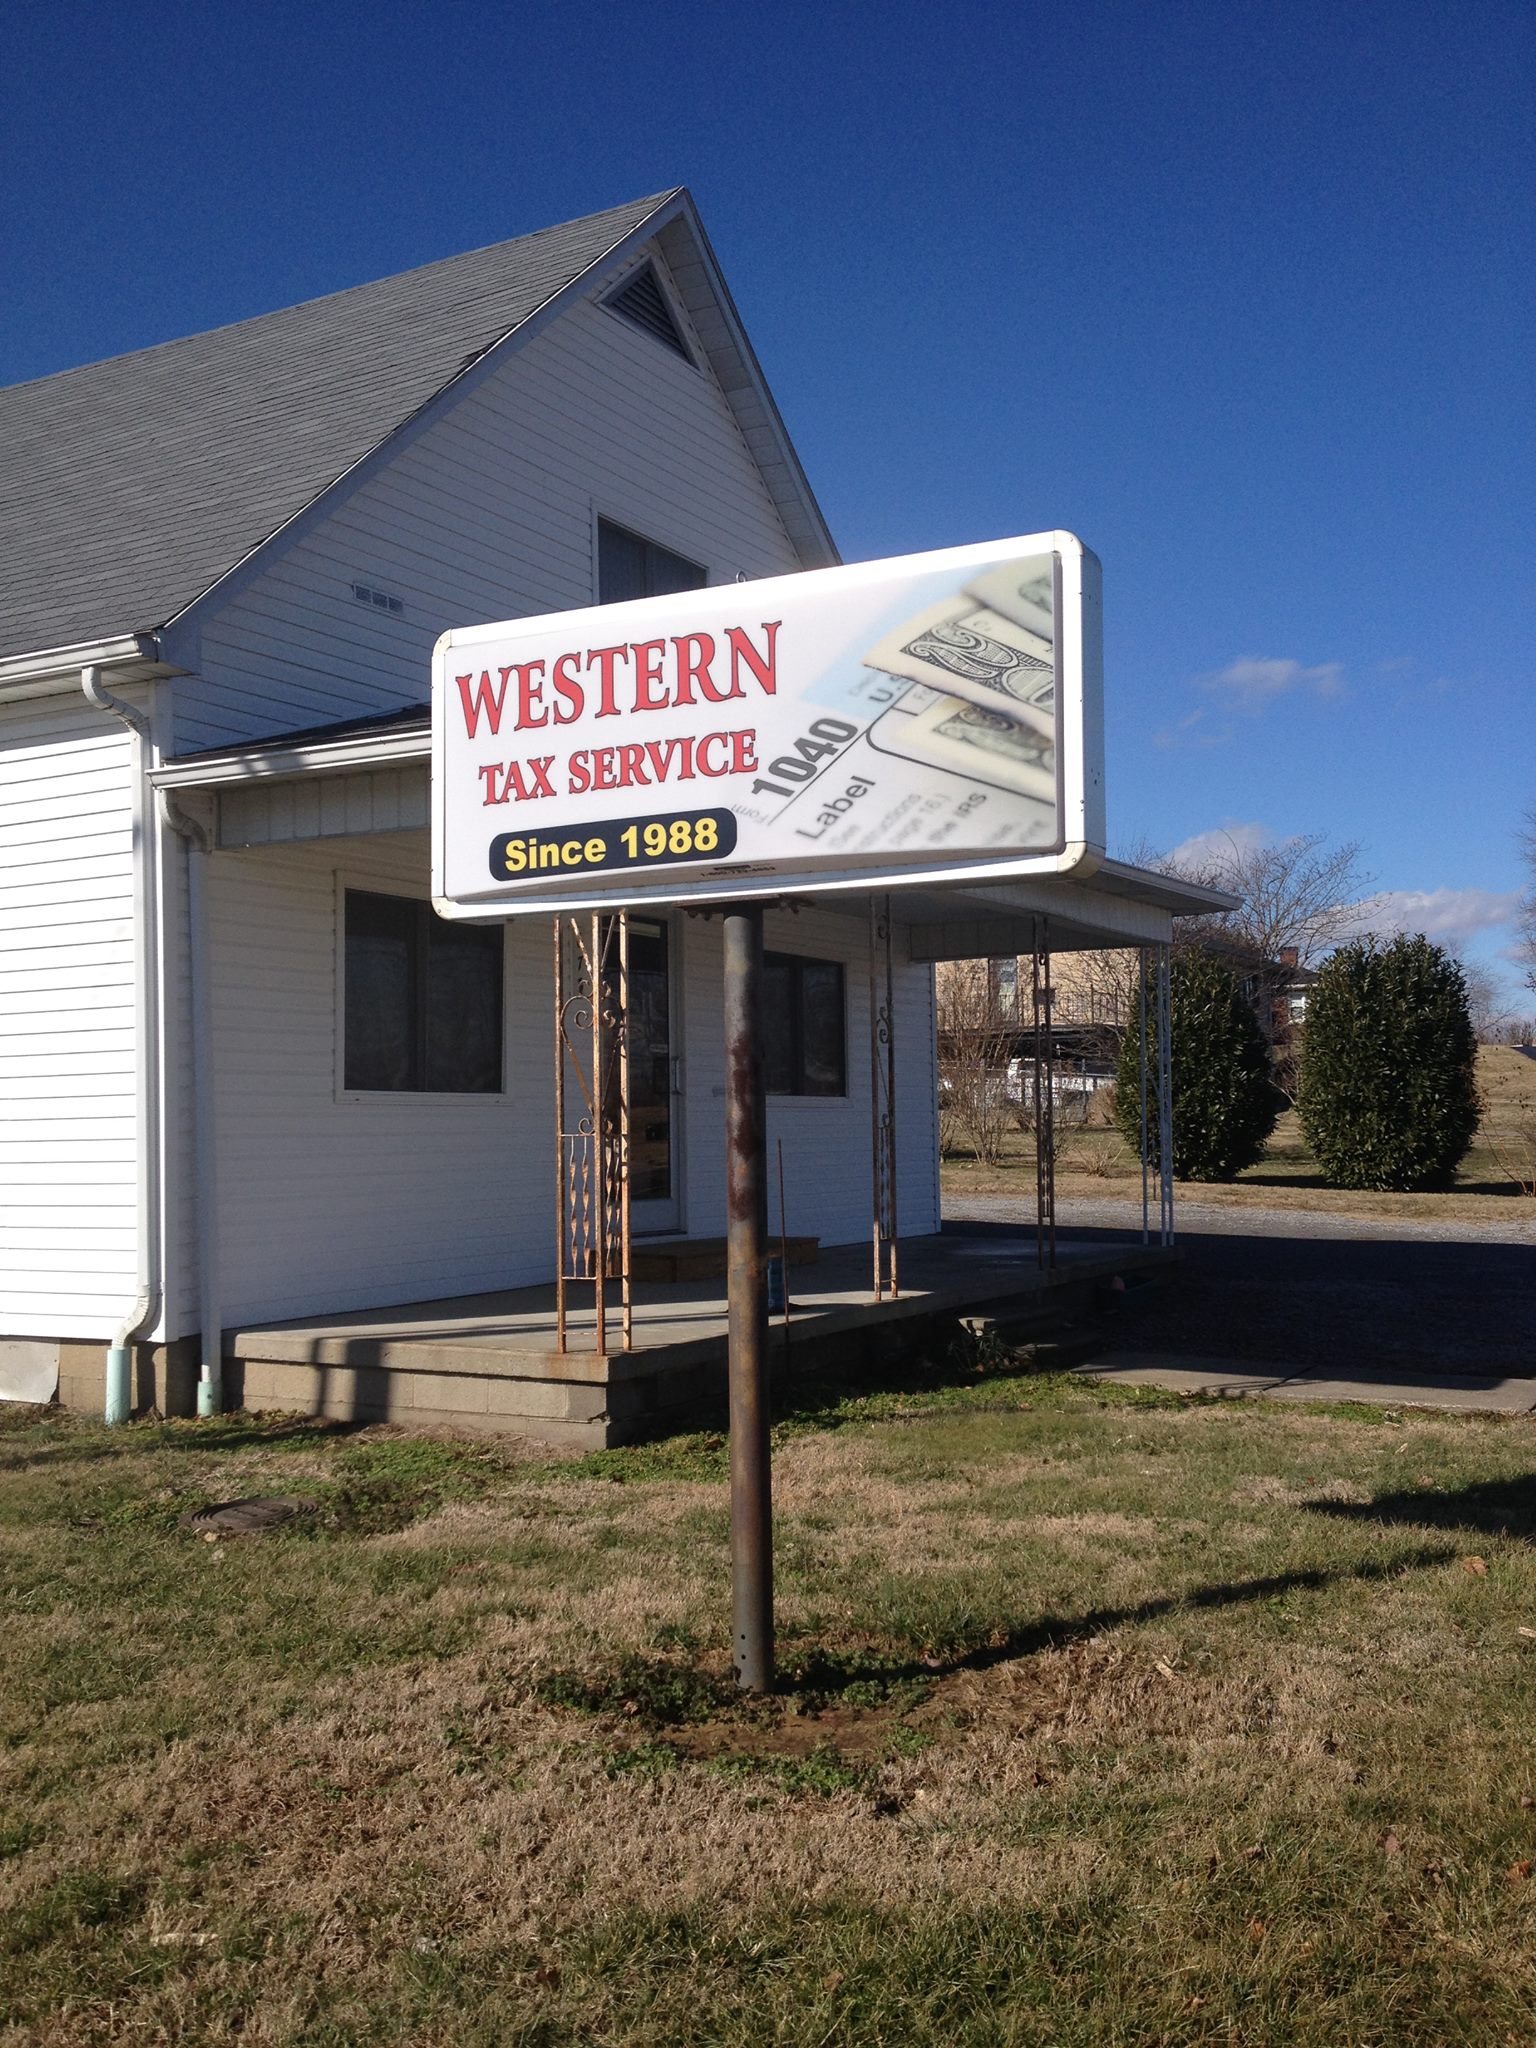 Western Tax Services 673 N Main St, Jamestown Kentucky 42629